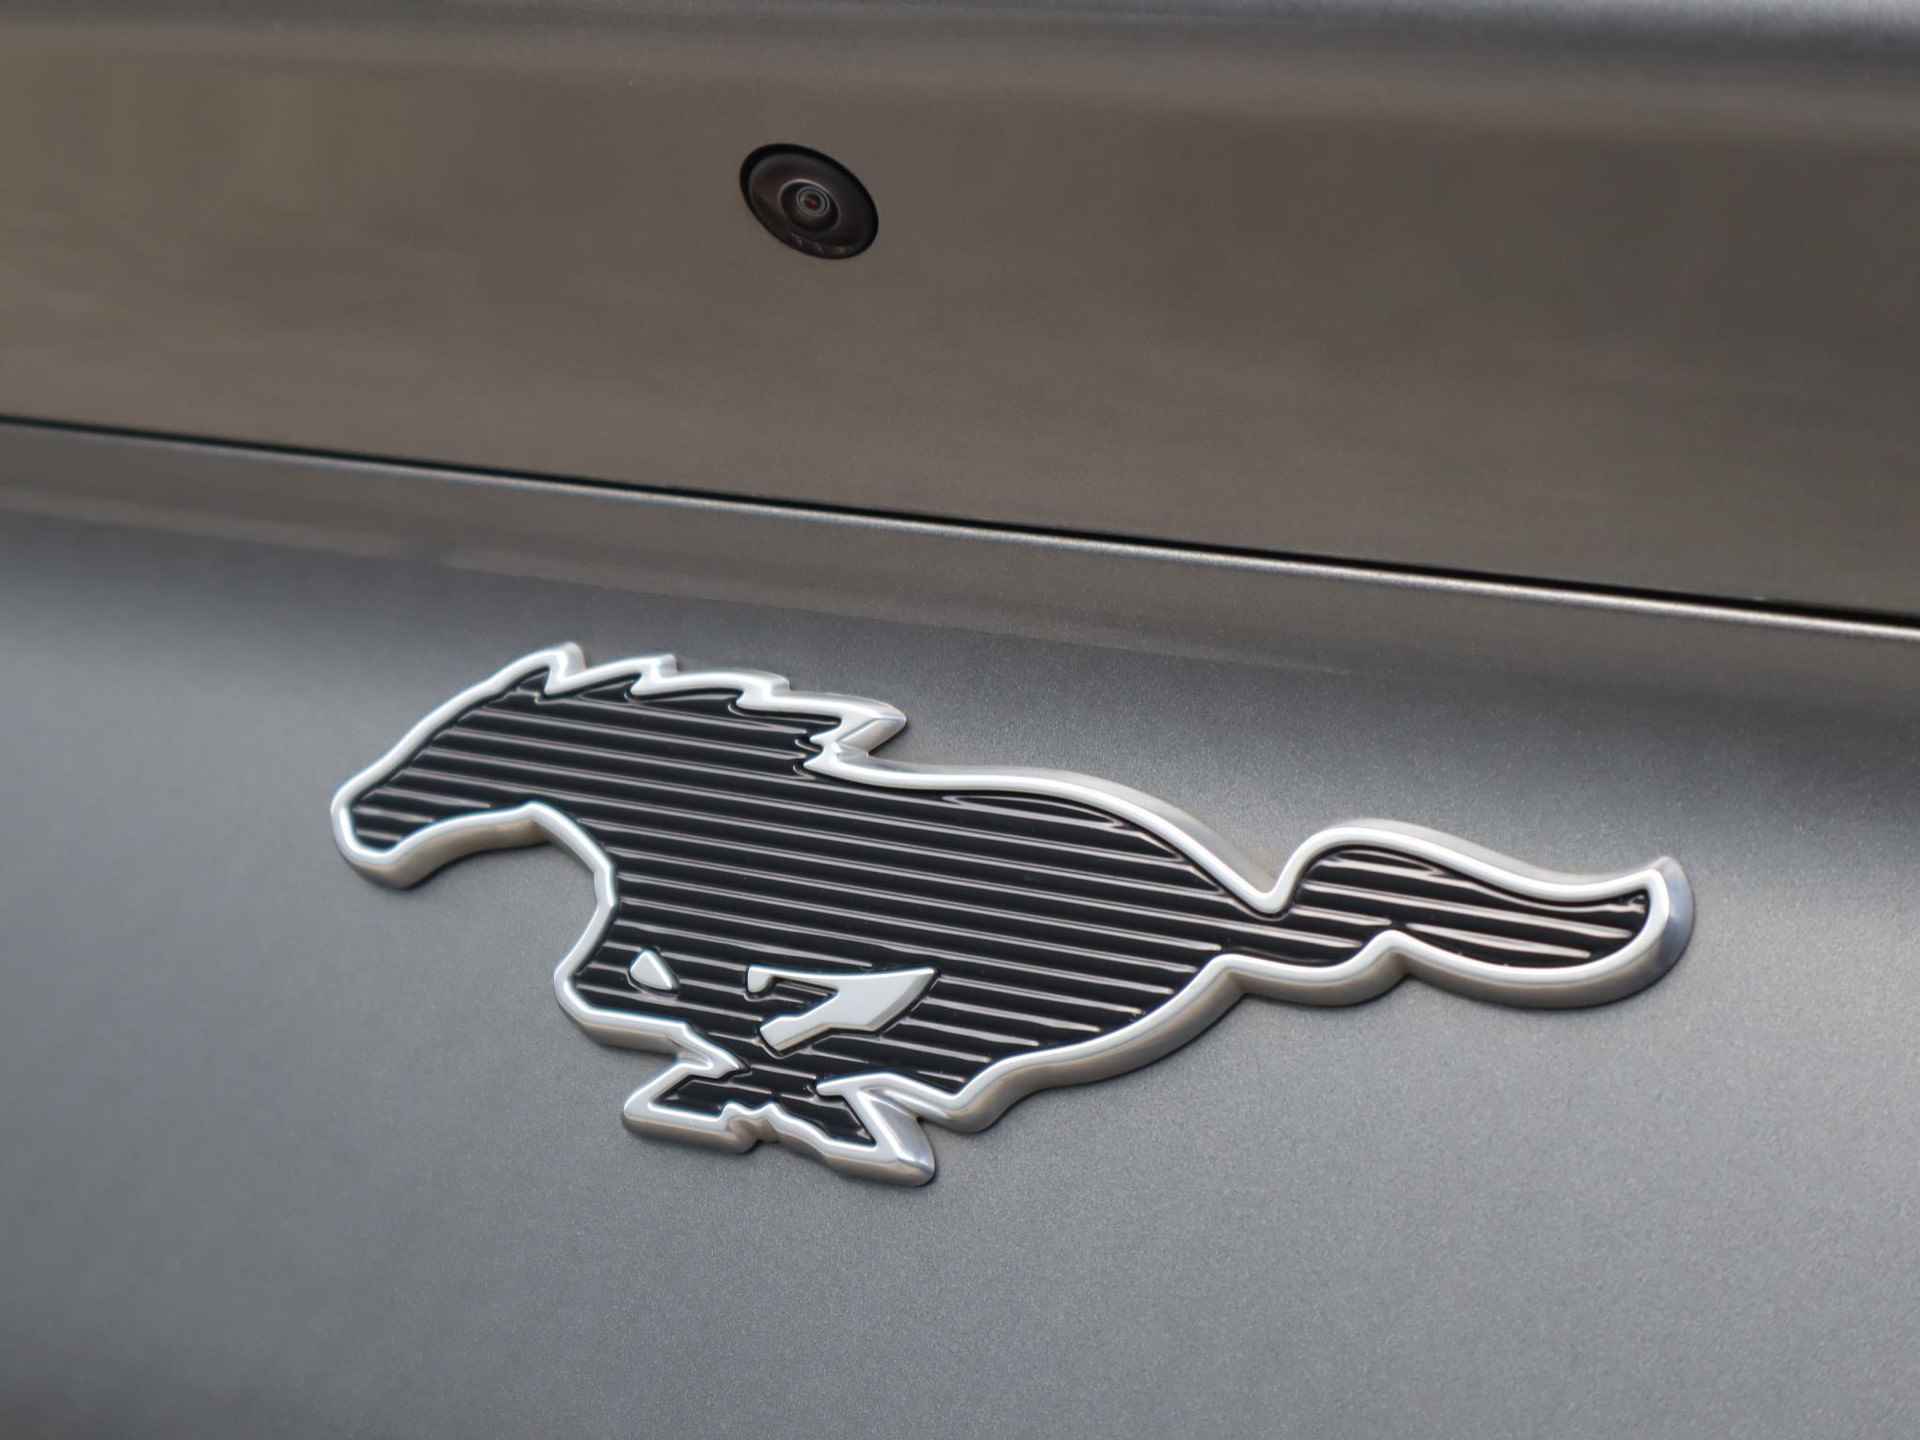 Ford Mustang Mach-E 98kWh Extended RWD 294pk | 12% bijtelling | Glazen dak | Technology + pakket | B&O Audio | Adaptieve cruise control | 18inch lichtmetalen velgen | Stoel- stuur en voorruitverwarming - 10/60